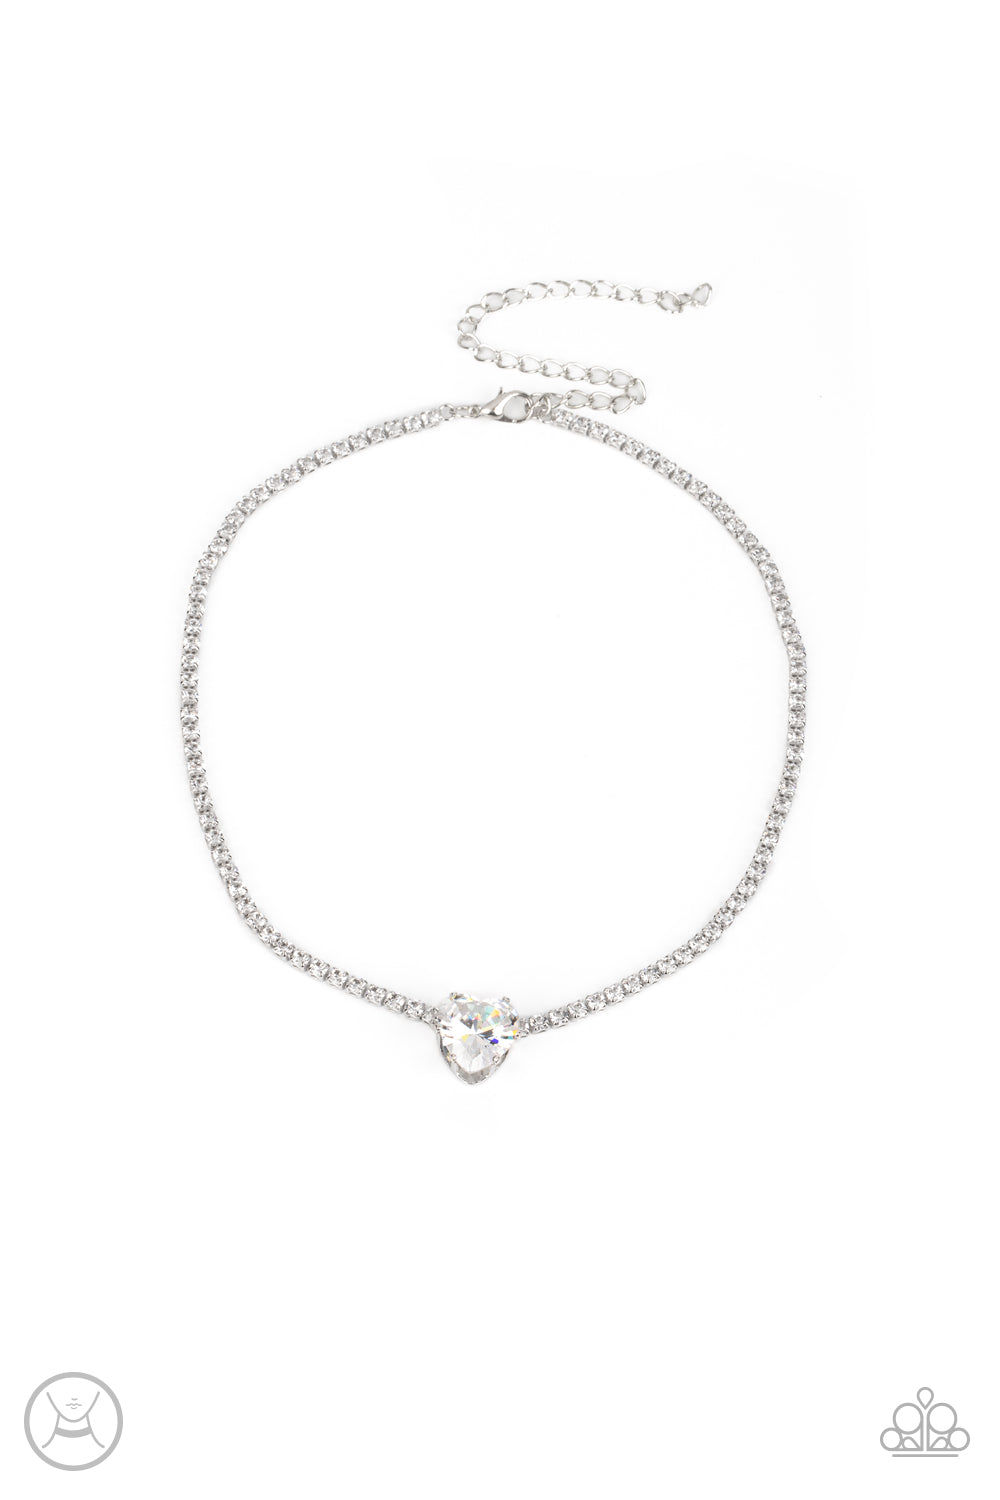 Flirty Fiancé White Necklace & Bracelet Set - Paparazzi Accessories 